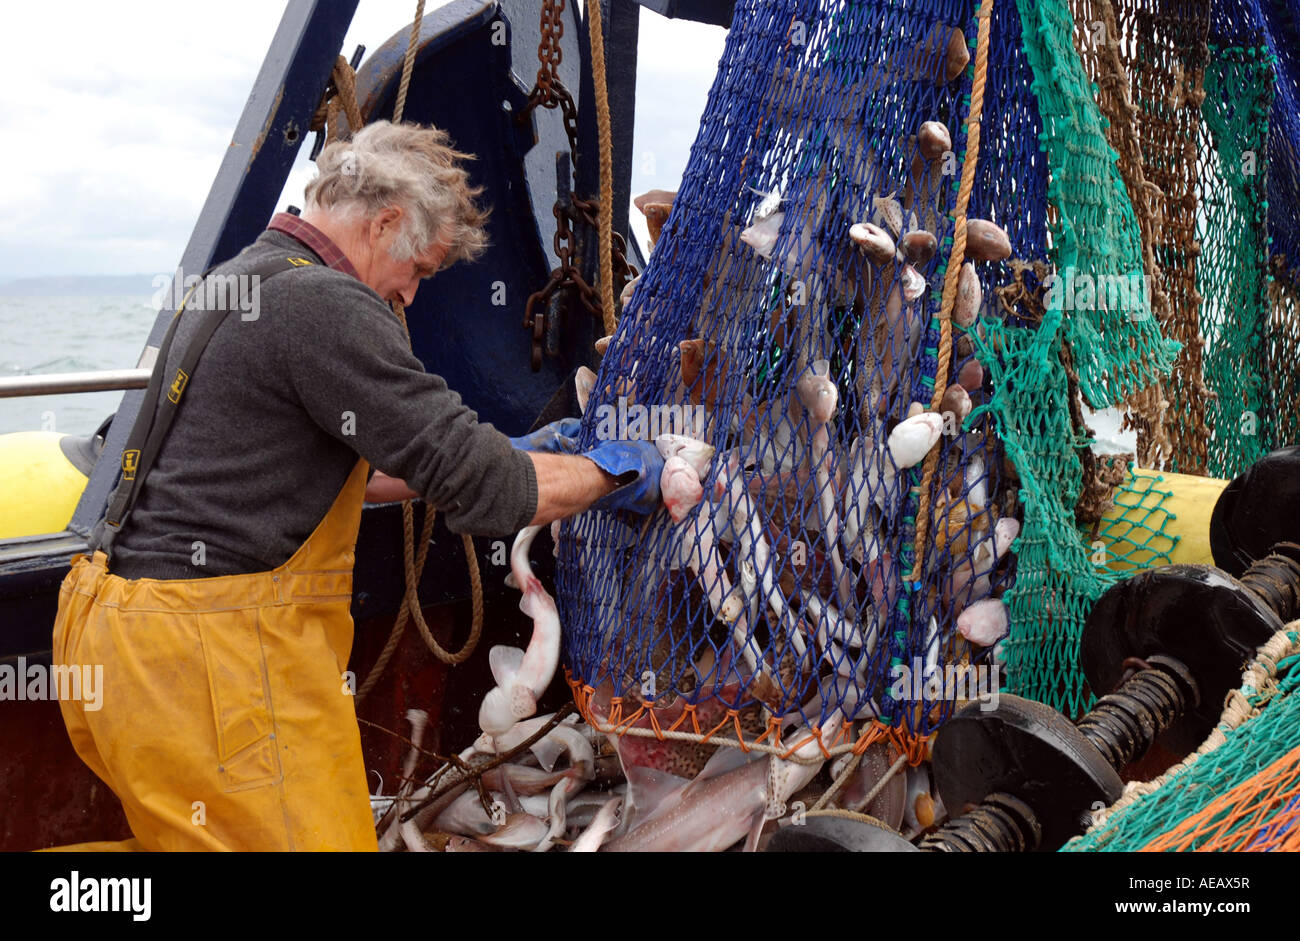 Fishing Creels on Dockside. Stock Image - Image of fleet, netting